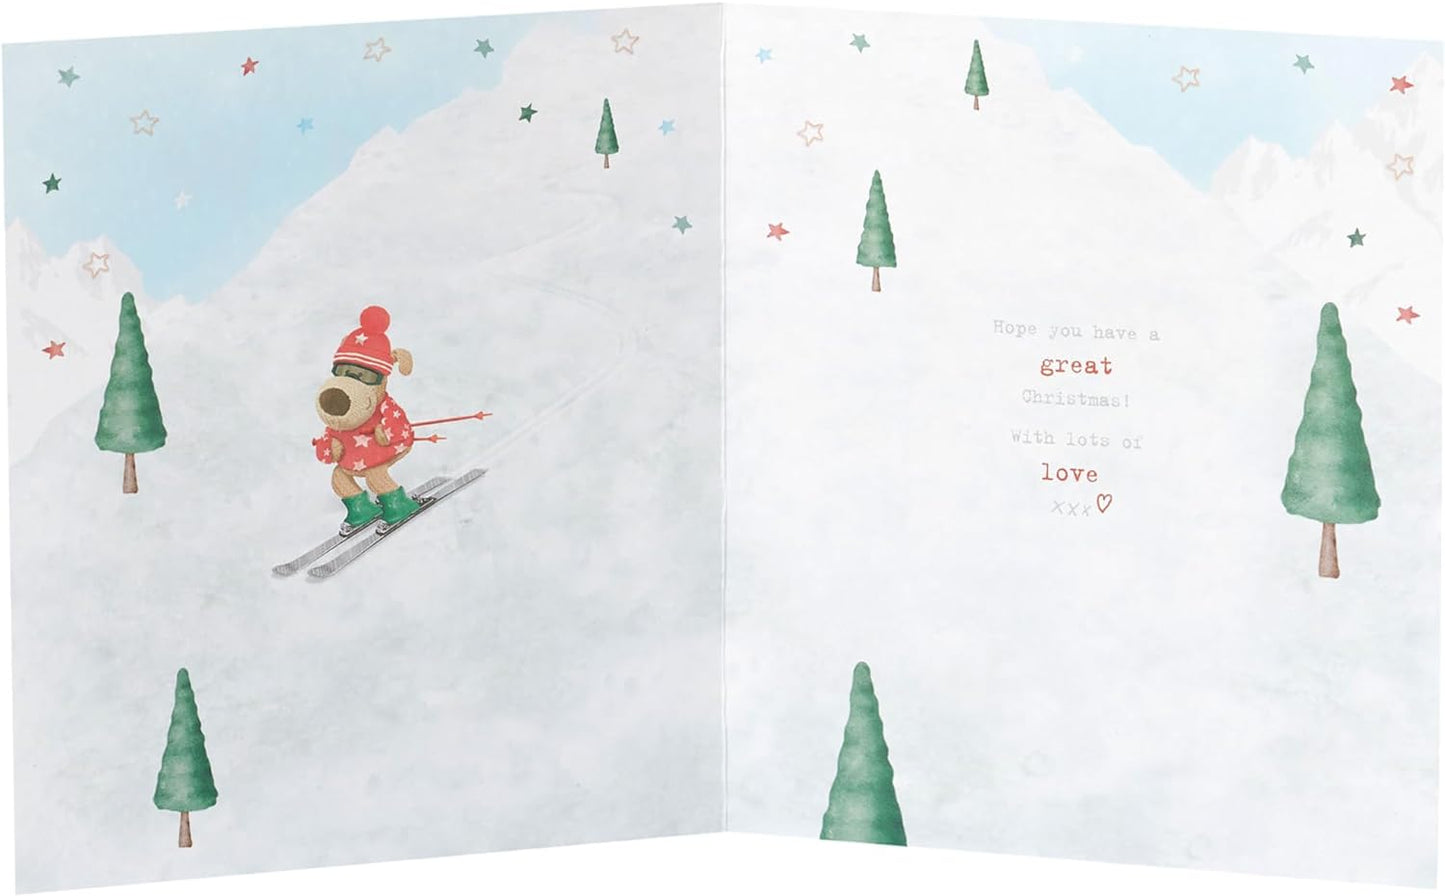 Nephew Boofle Skiing Christmas Card